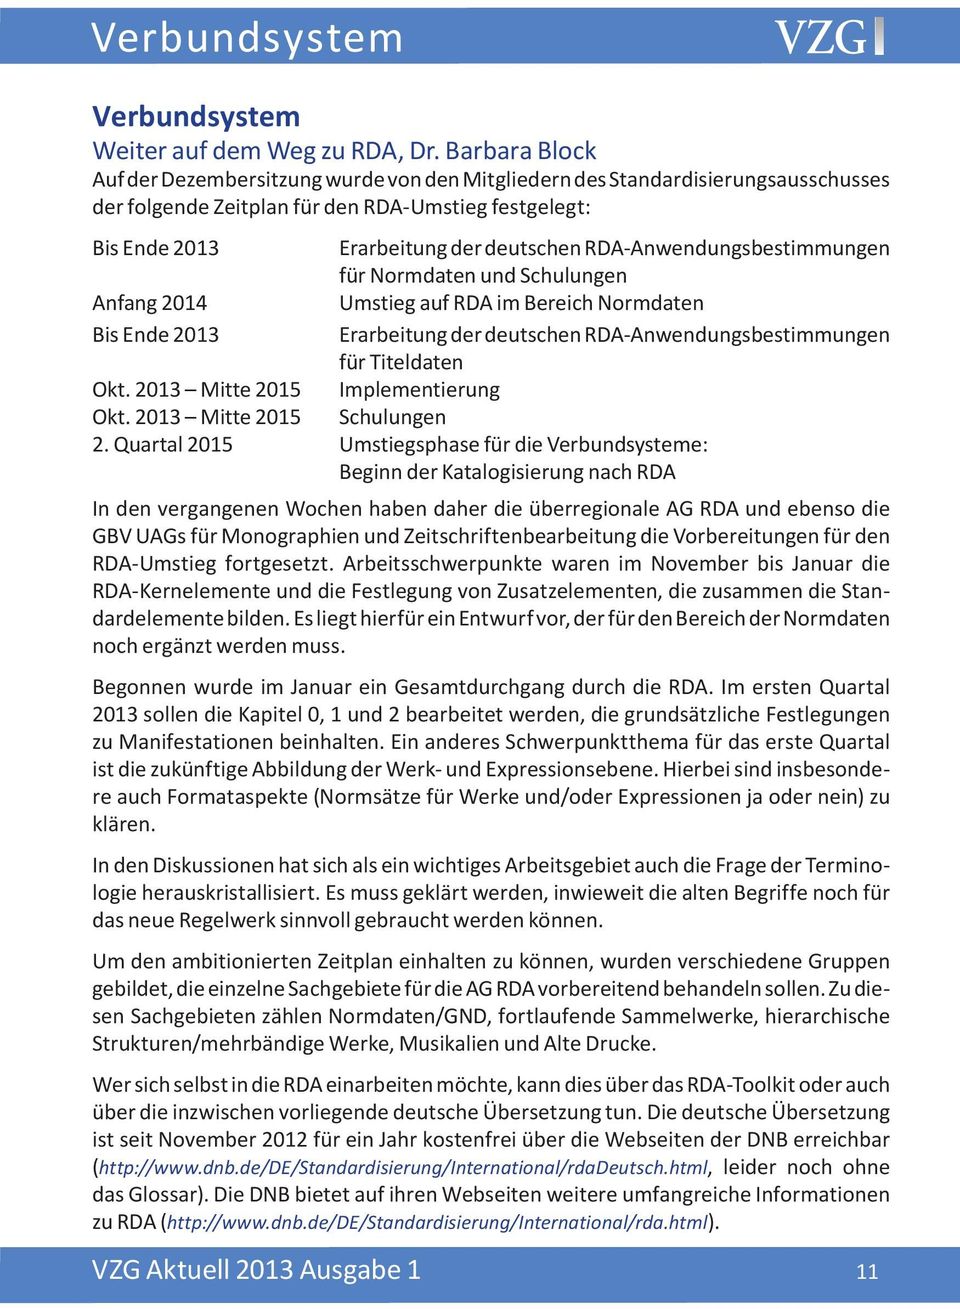 RDA-Anwendungsbestimmungen für Normdaten und Schulungen Anfang 2014 Umstieg auf RDA im Bereich Normdaten Bis Ende 2013 Erarbeitung der deutschen RDA-Anwendungsbestimmungen für Titeldaten Okt.